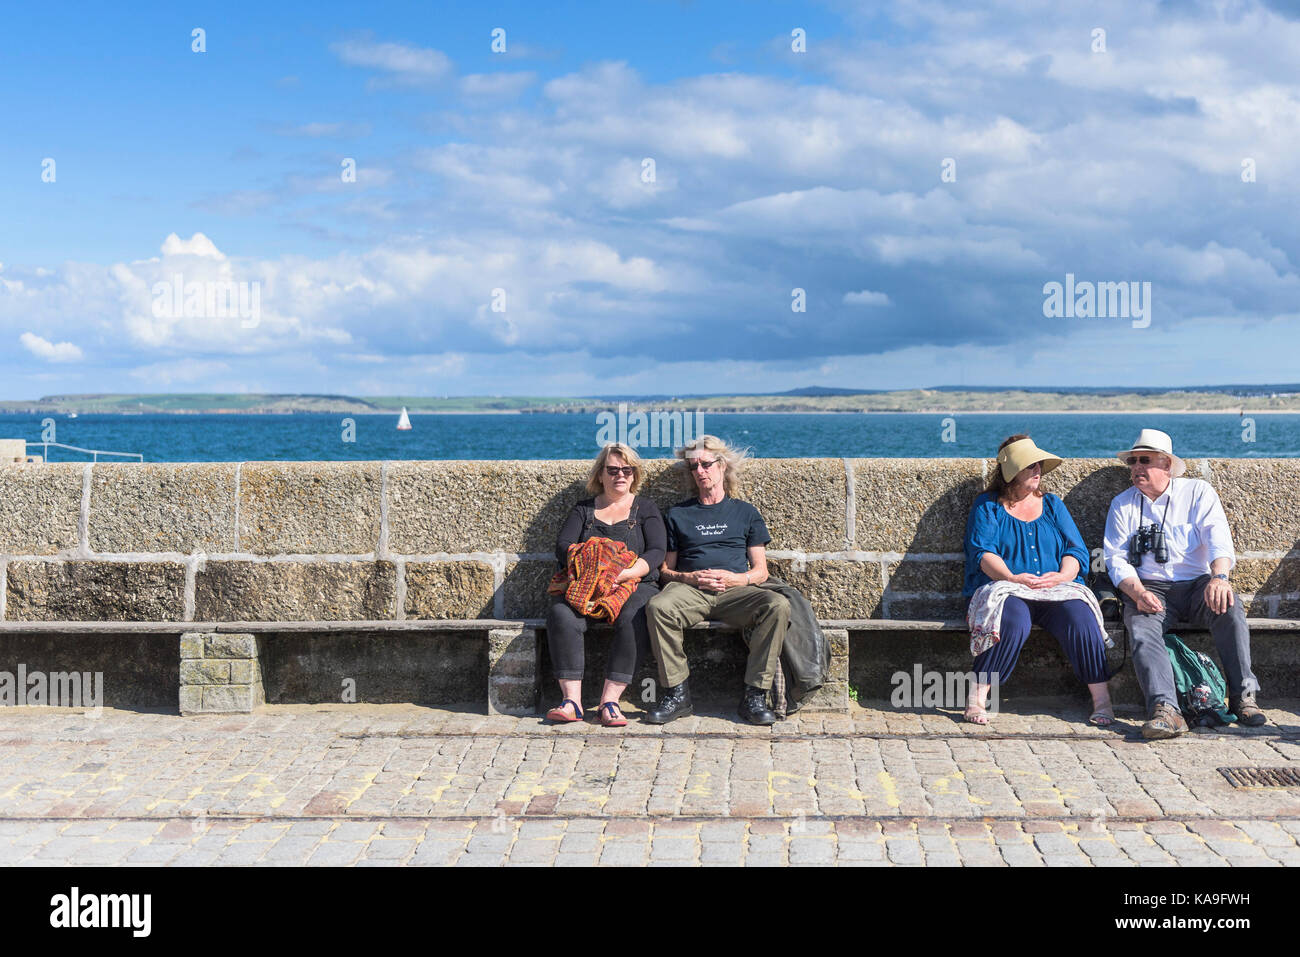 St ives - vacanzieri seduti e rilassante sulla smeatons Molo di St Ives in Cornovaglia. Foto Stock